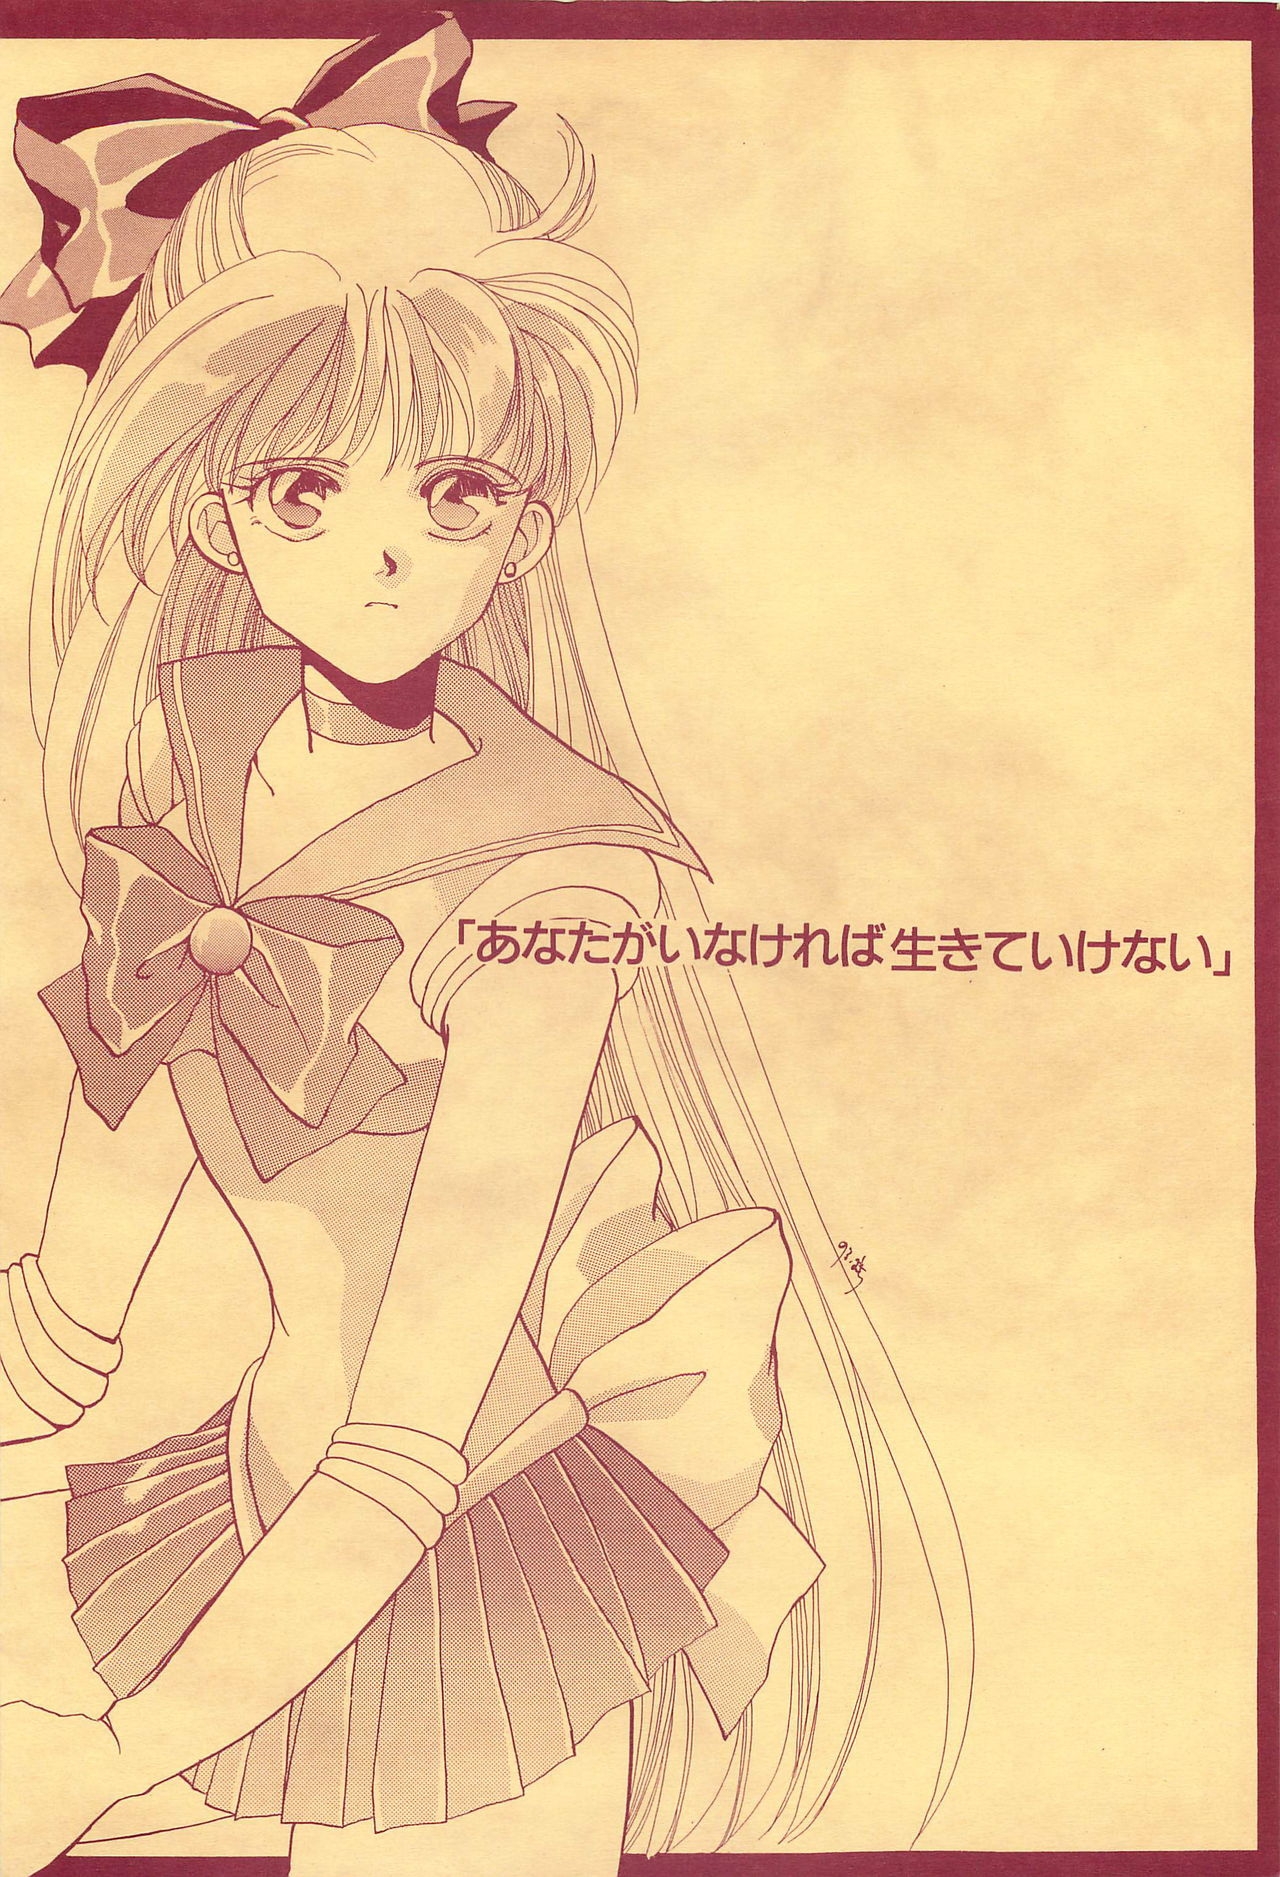 [Hello World (Muttri Moony)] Kaze no You ni Yume no You ni - Sailor Moon Collection (Sailor Moon) 197